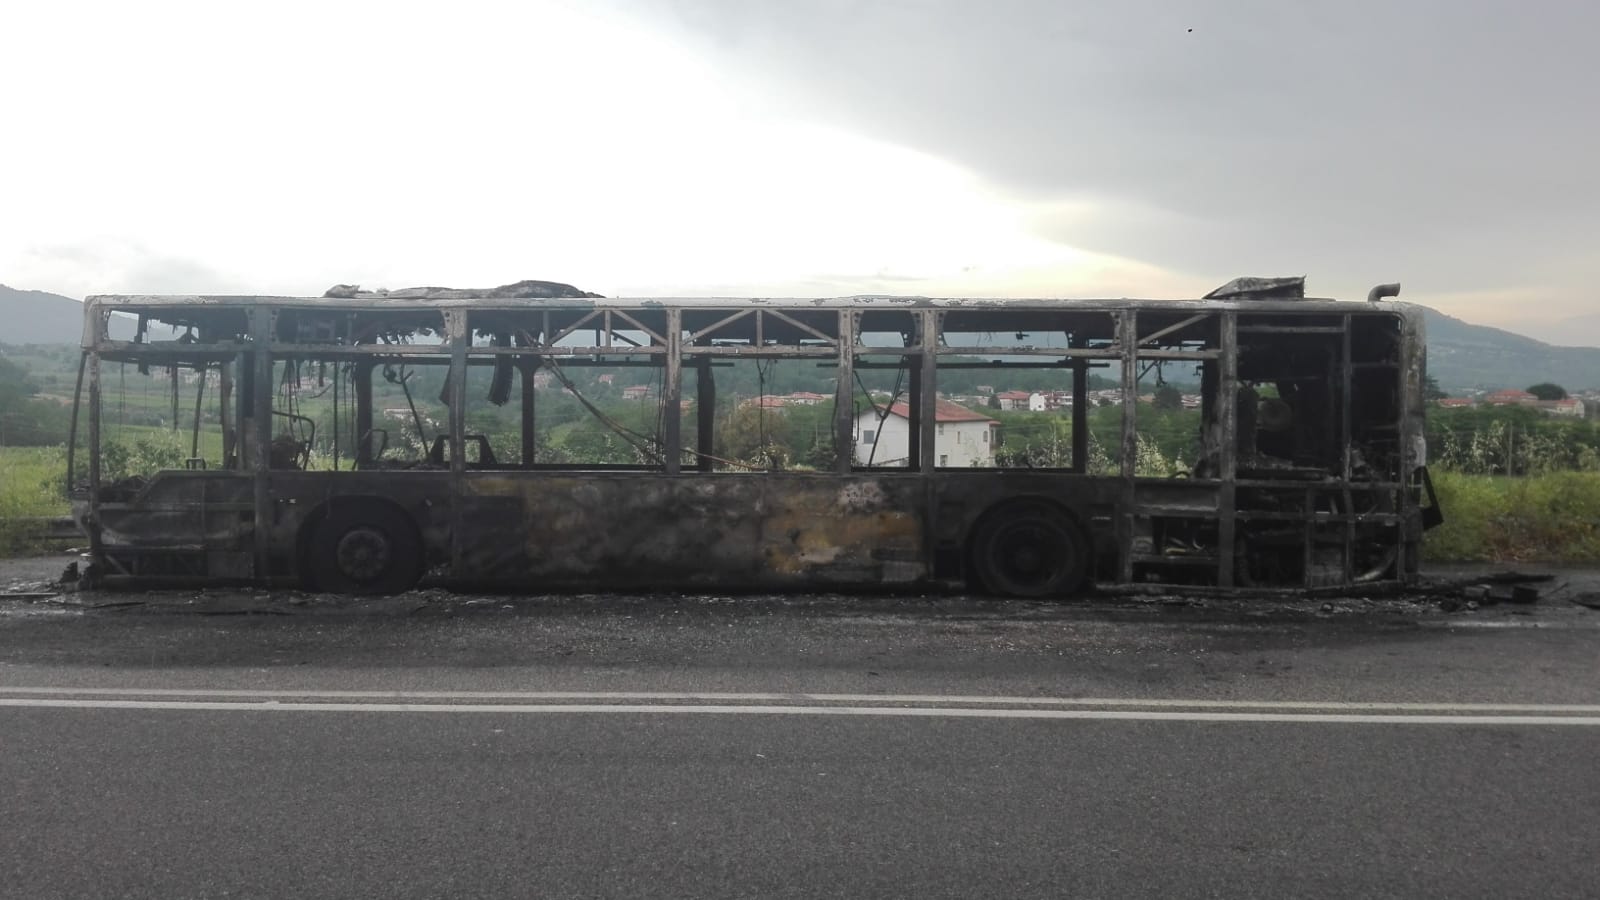 Autobus distrutto dalle fiamme lungo la Telesina, nessun ferito